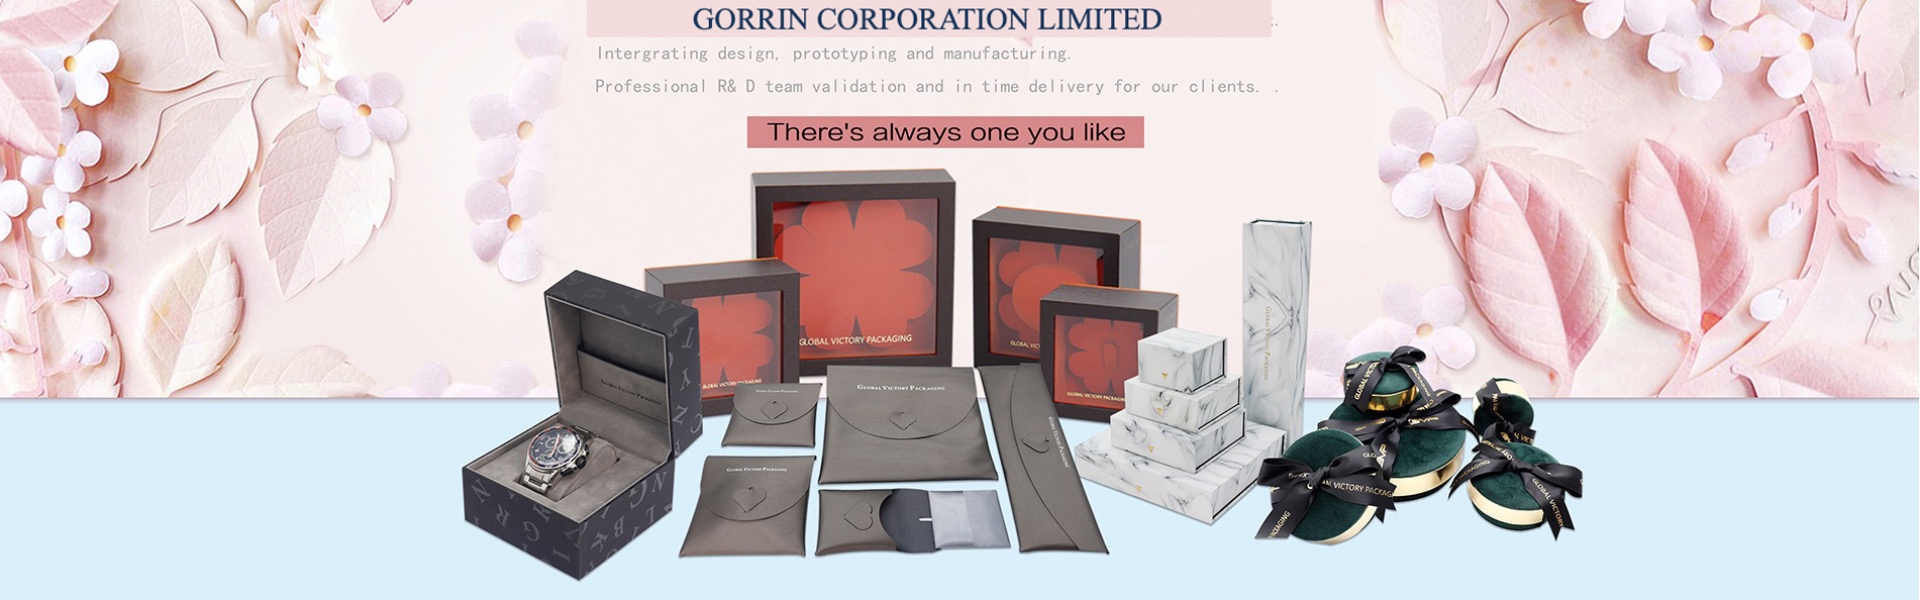 papperskartong, smycken, smyckeskrin.,Gorrin corporation limited